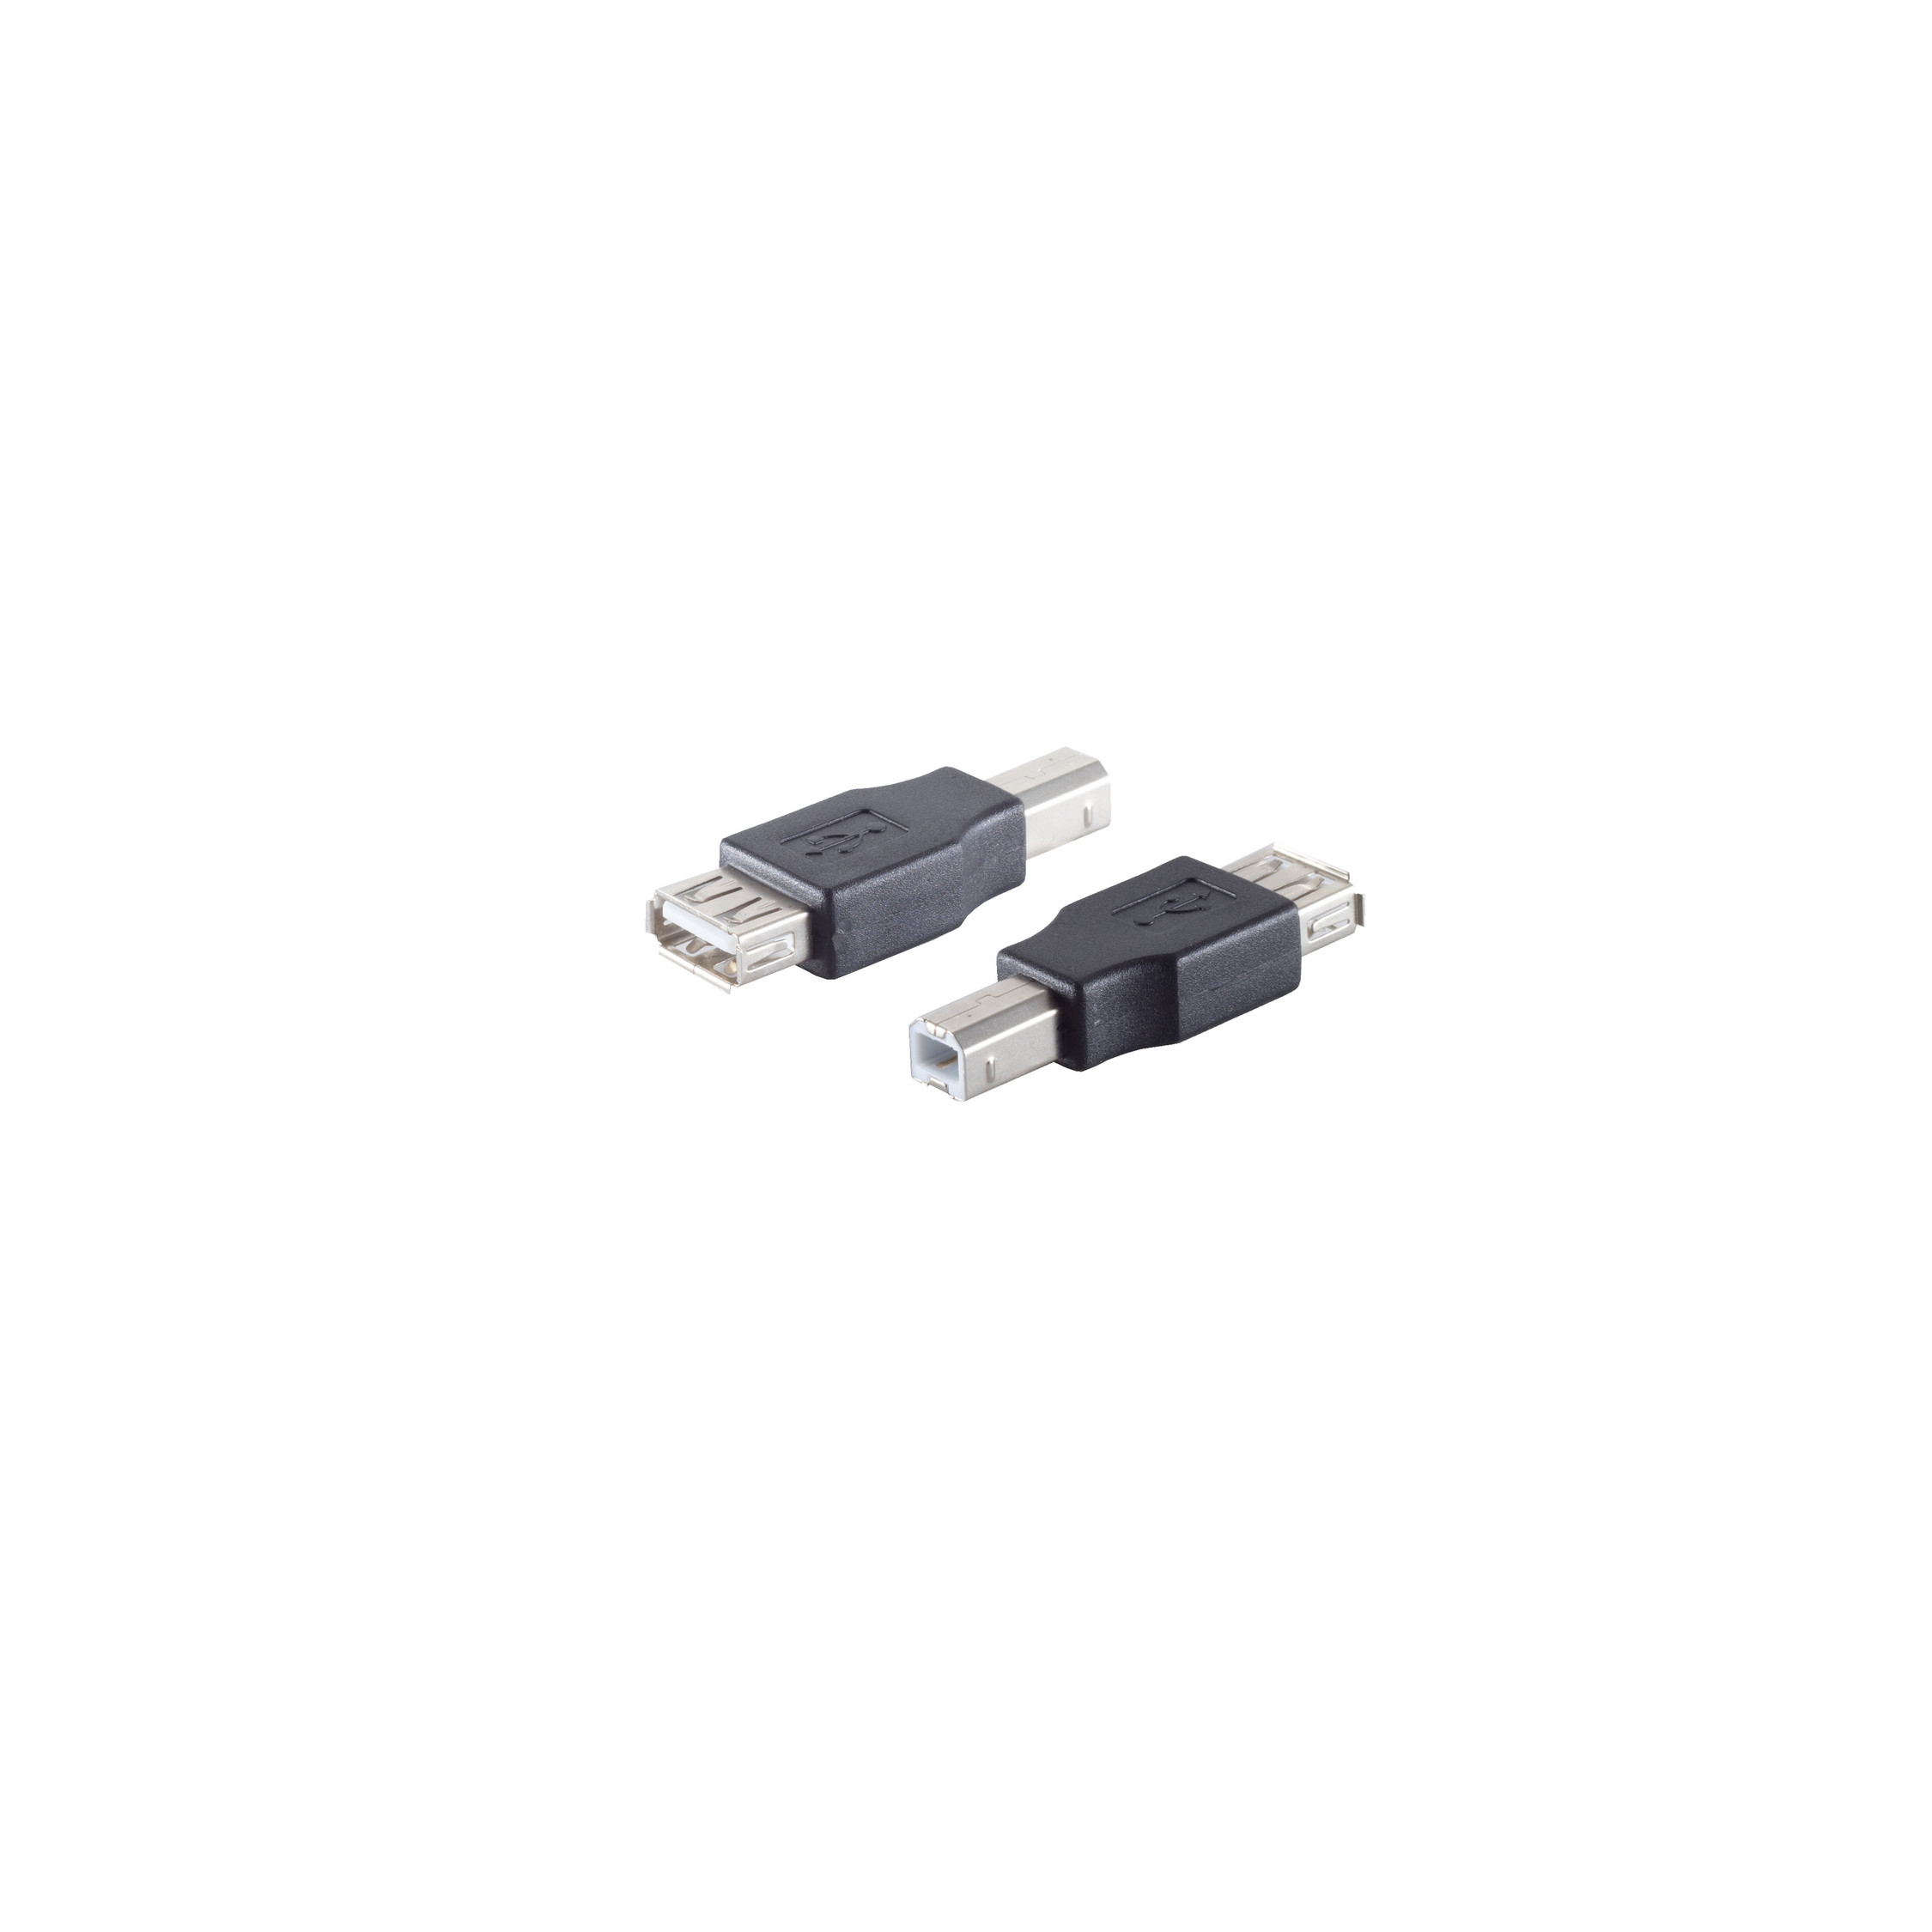 SHIVERPEAKS USB Adapter grau USB 2.0 Adapter, Stecker Kupplung B A 